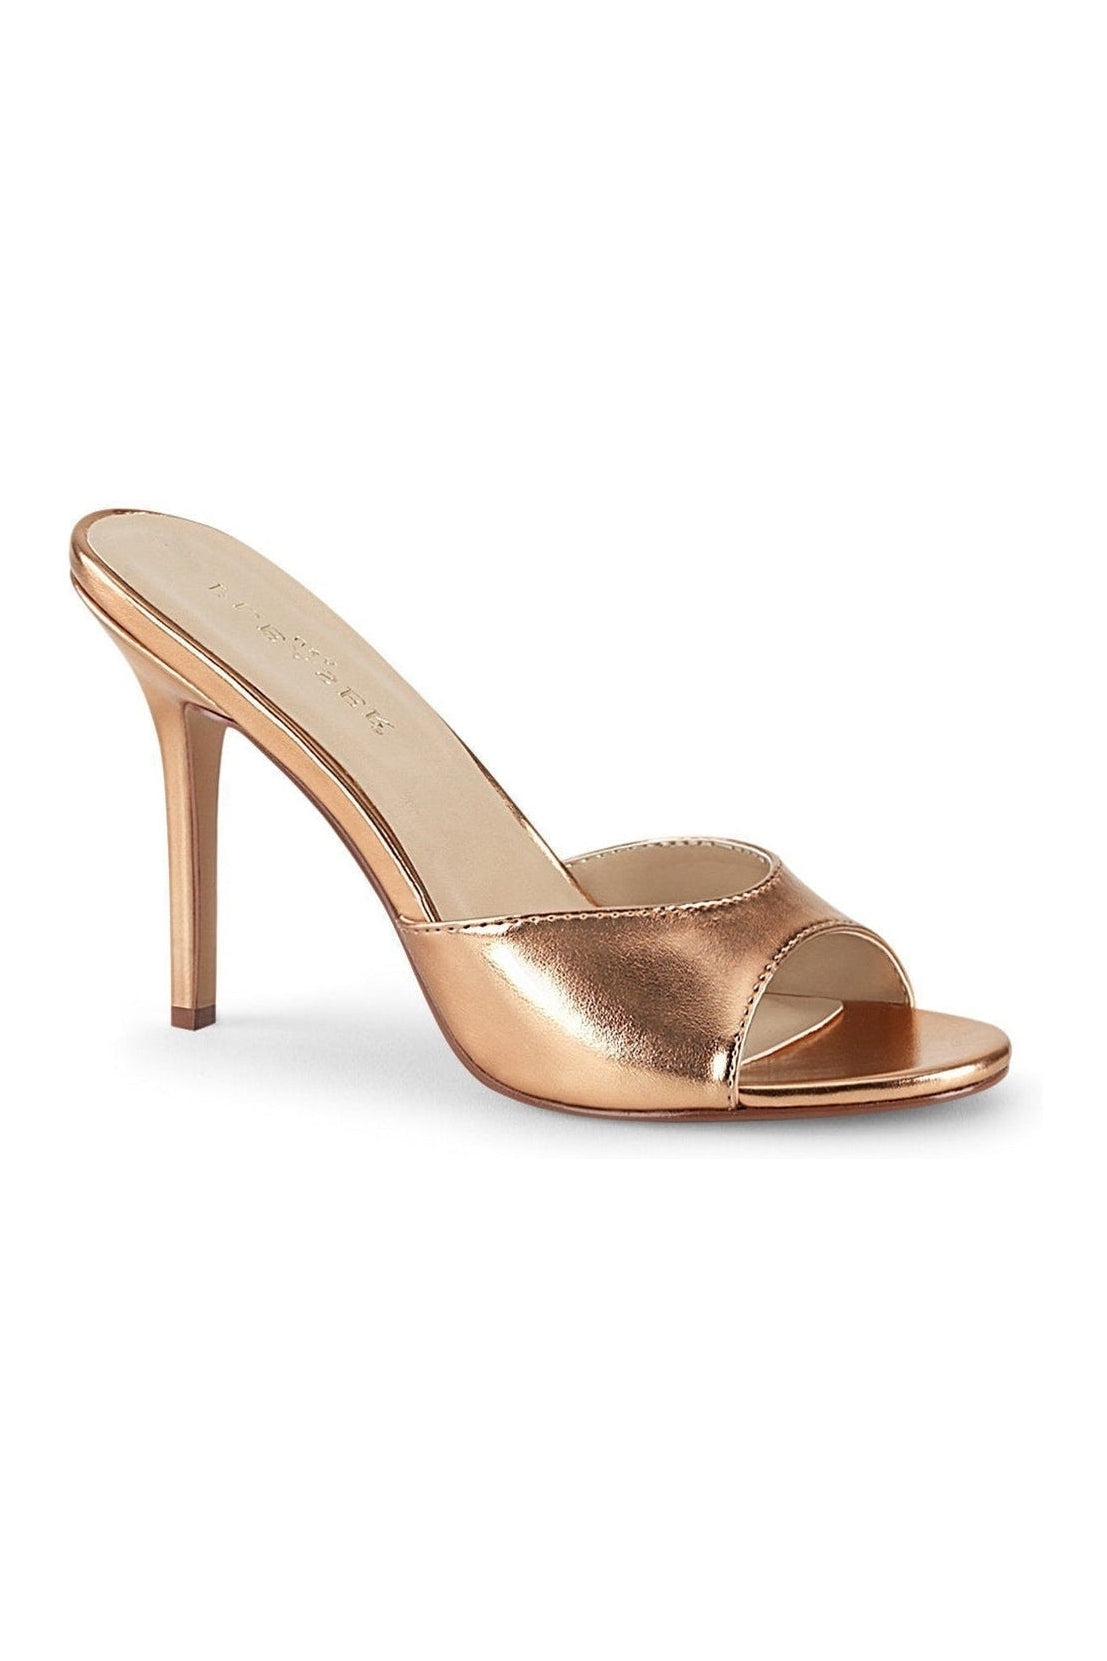 rose gold heels size 4